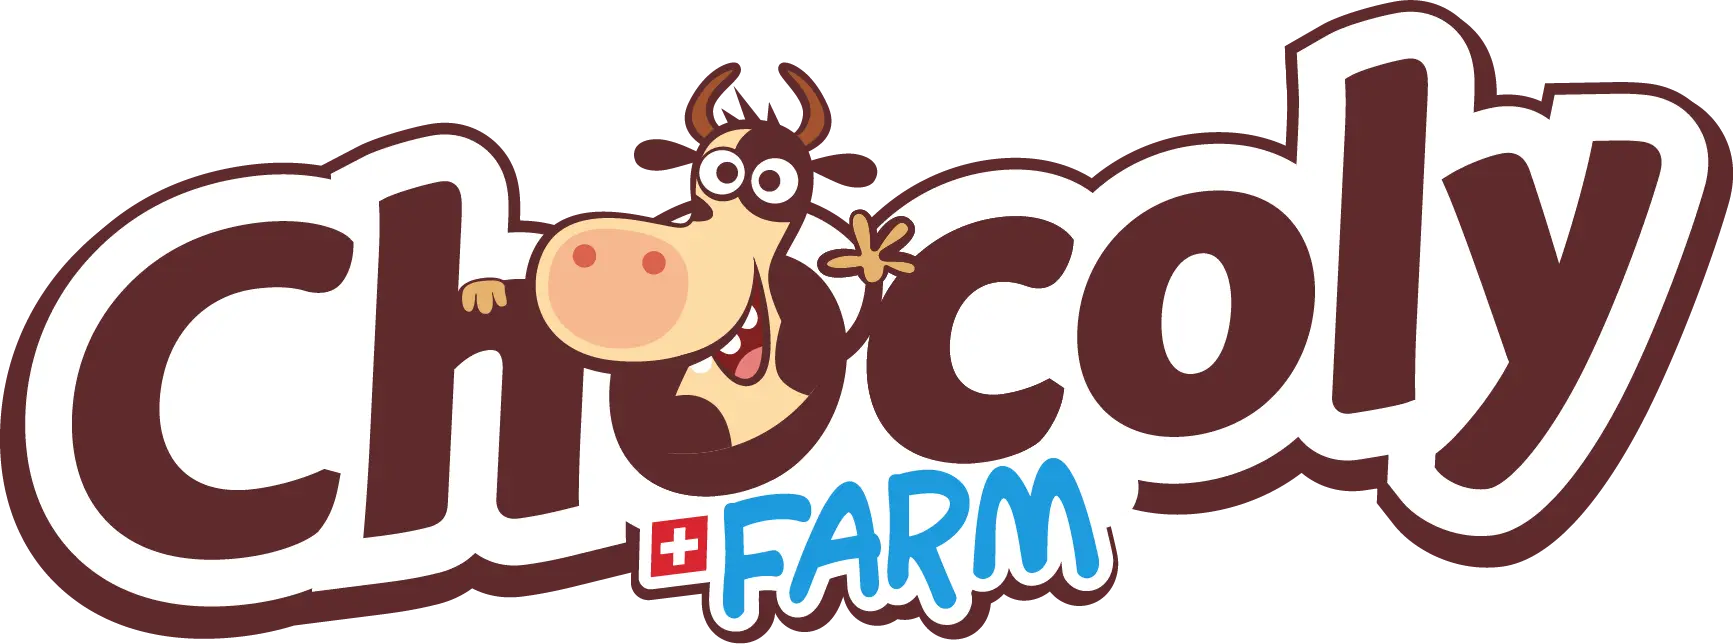 Chocoly Farm Logo